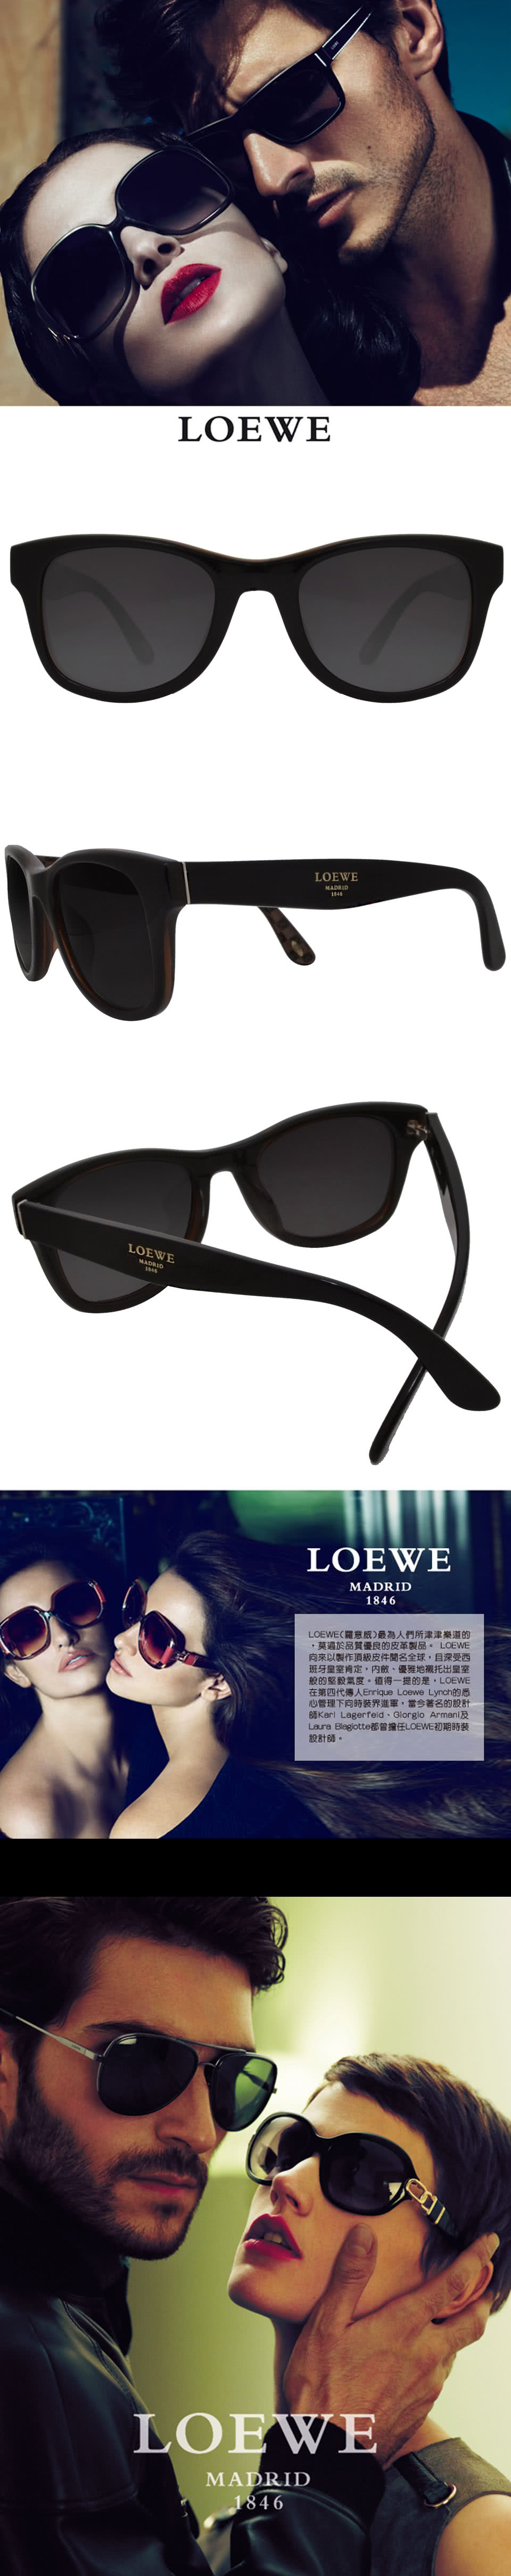 LOEWE 羅威 廣告形象款 時尚必備簡約太陽眼鏡(黑/咖啡